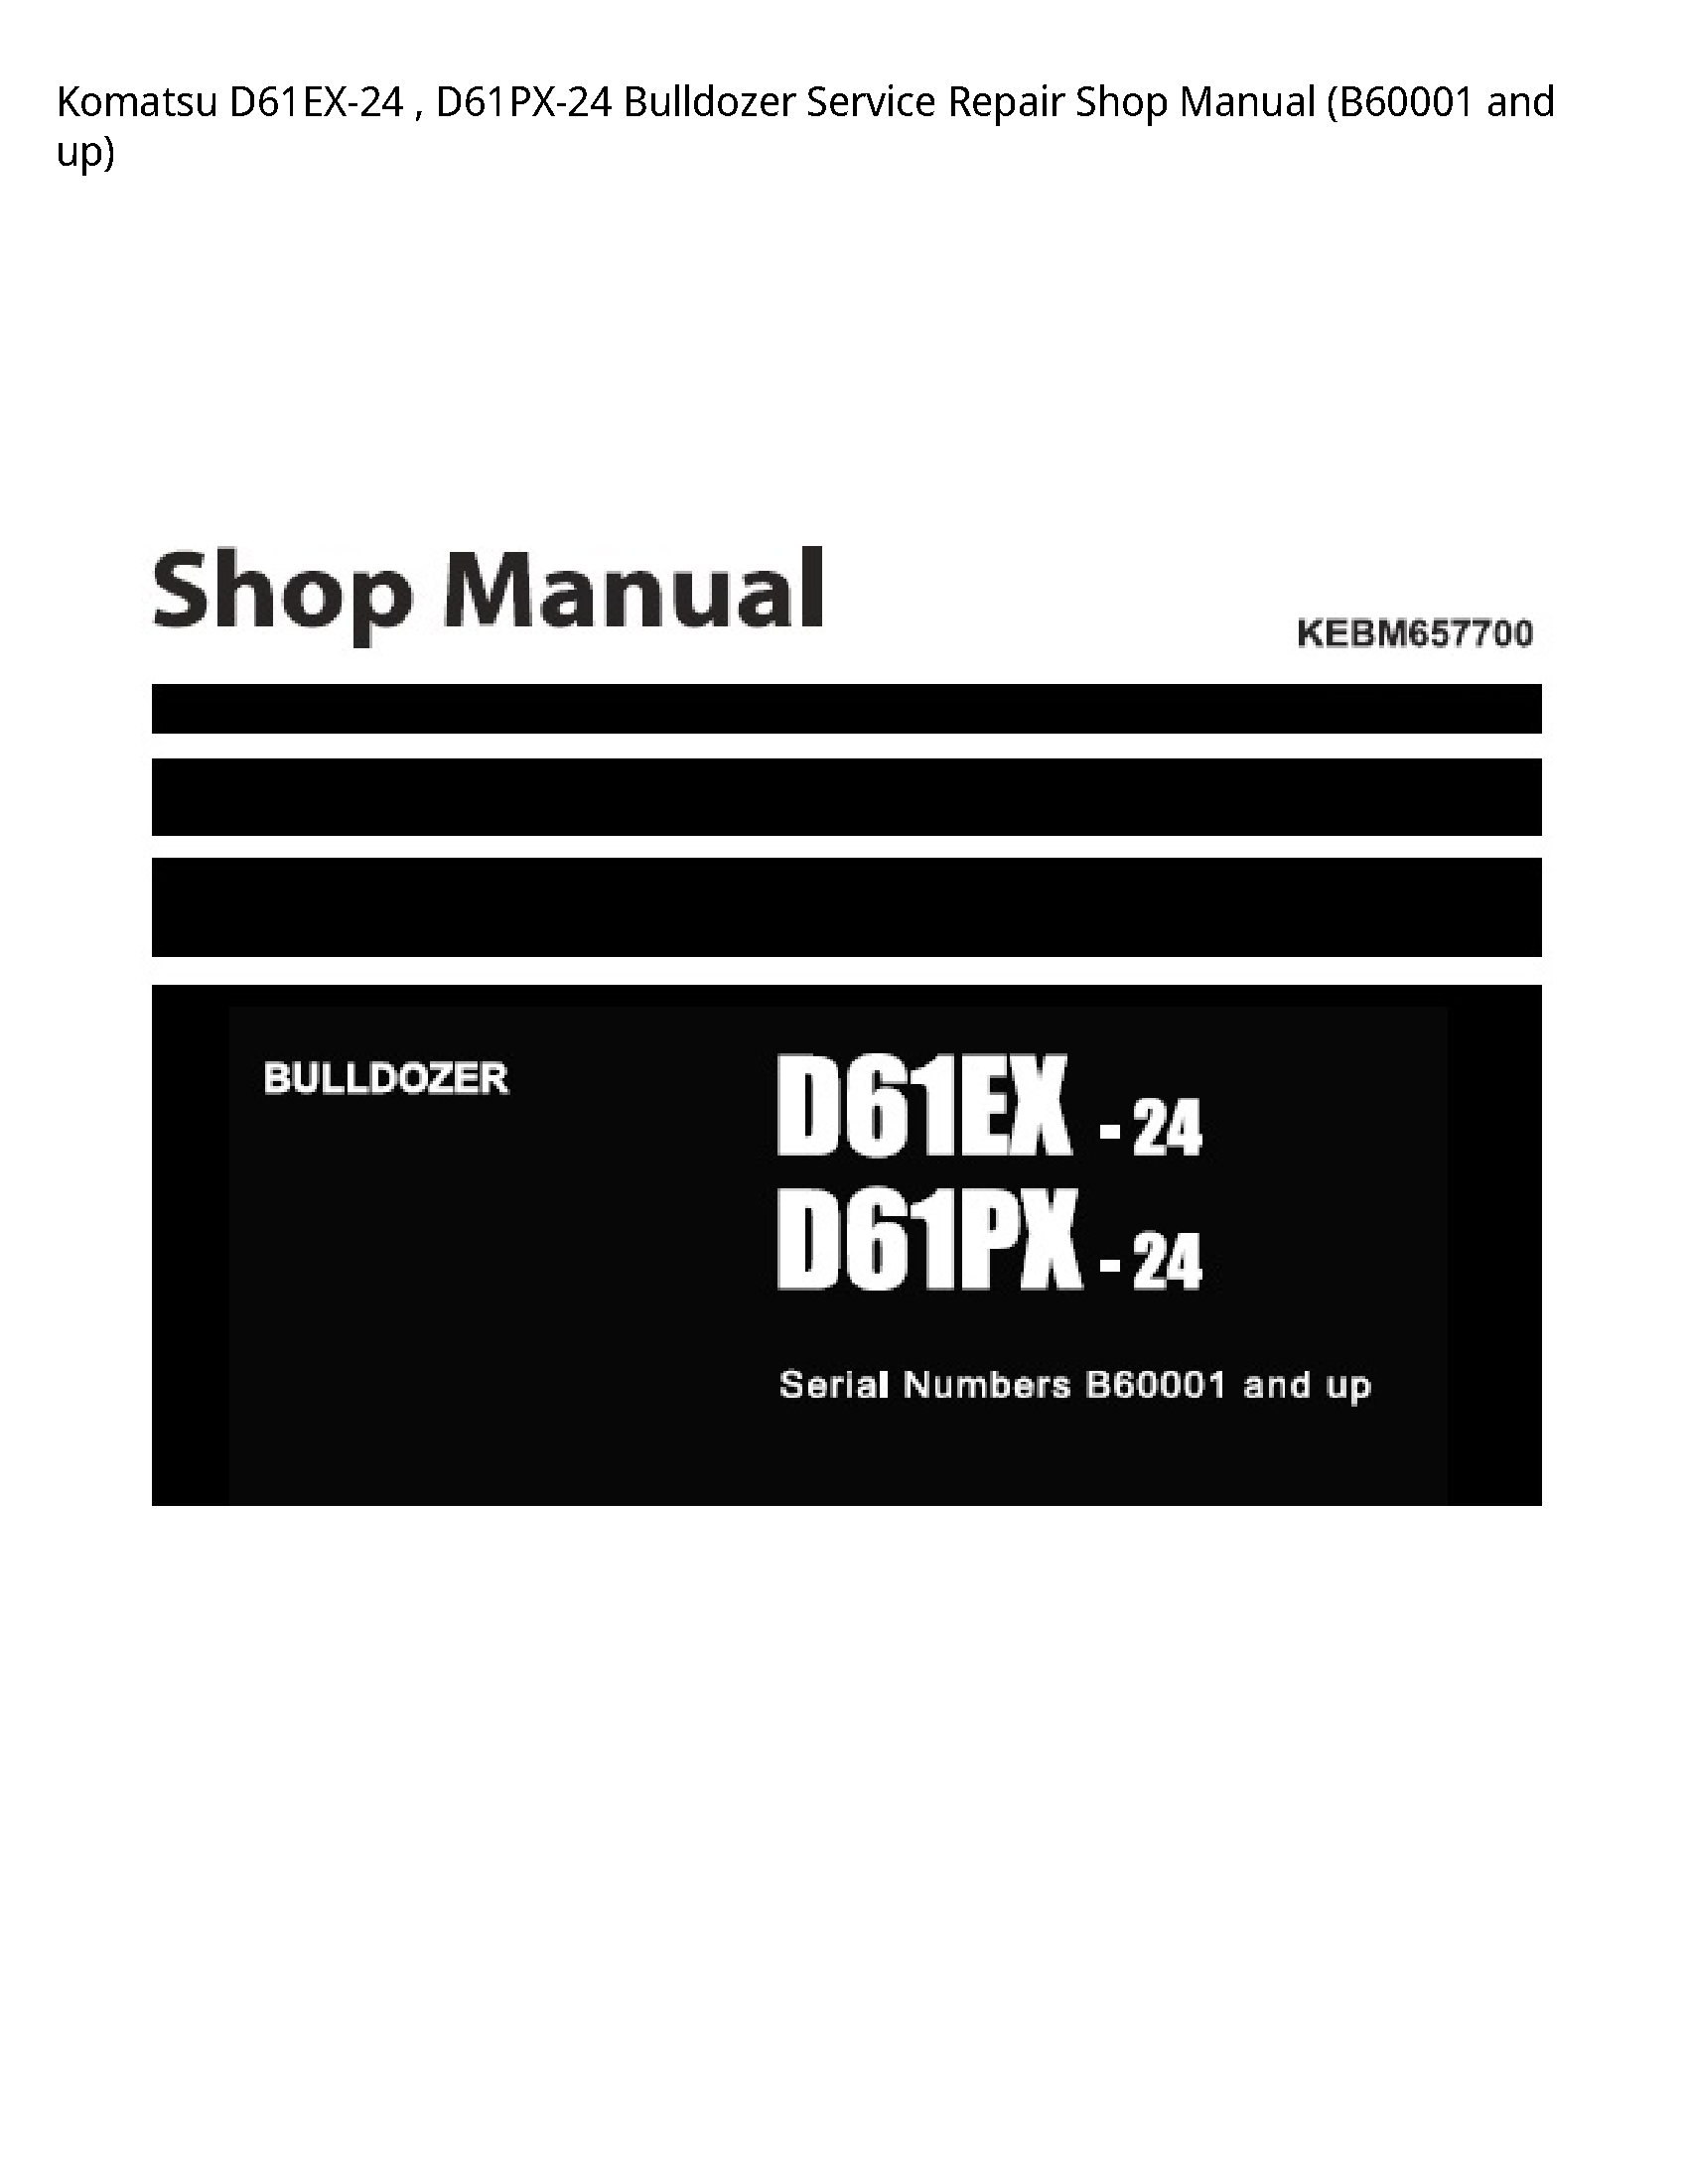 KOMATSU D61EX-24 Bulldozer manual